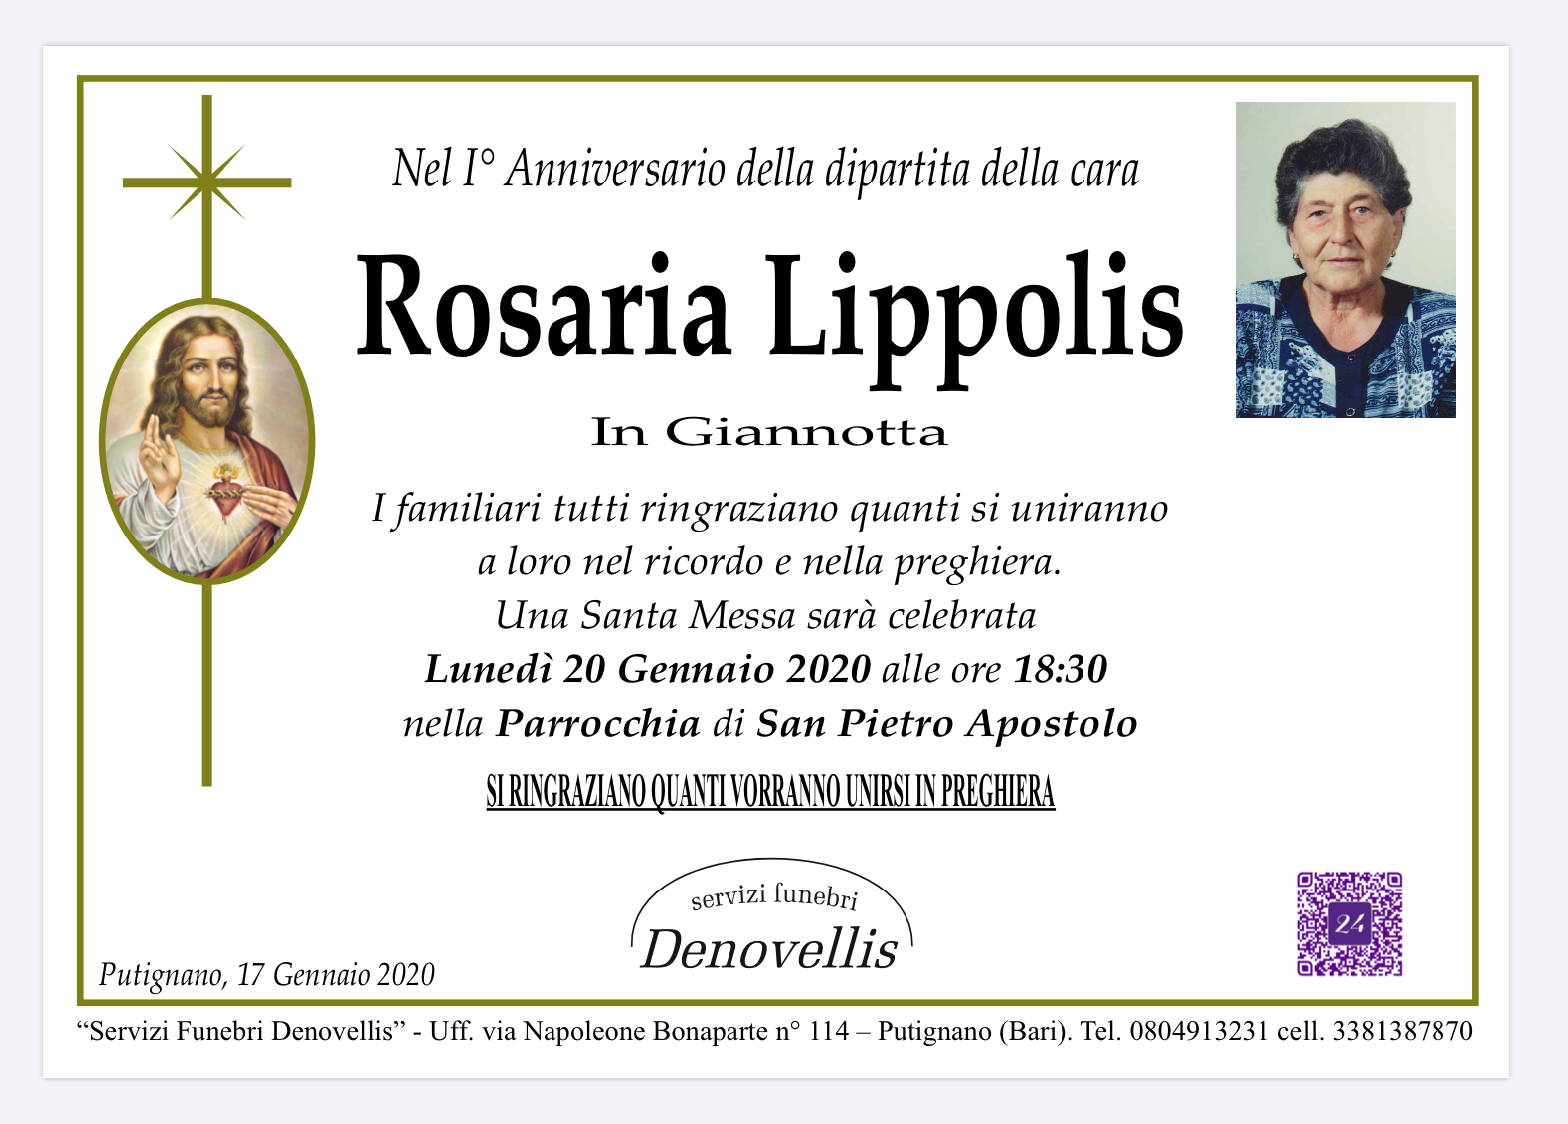 Rosaria Lippolis